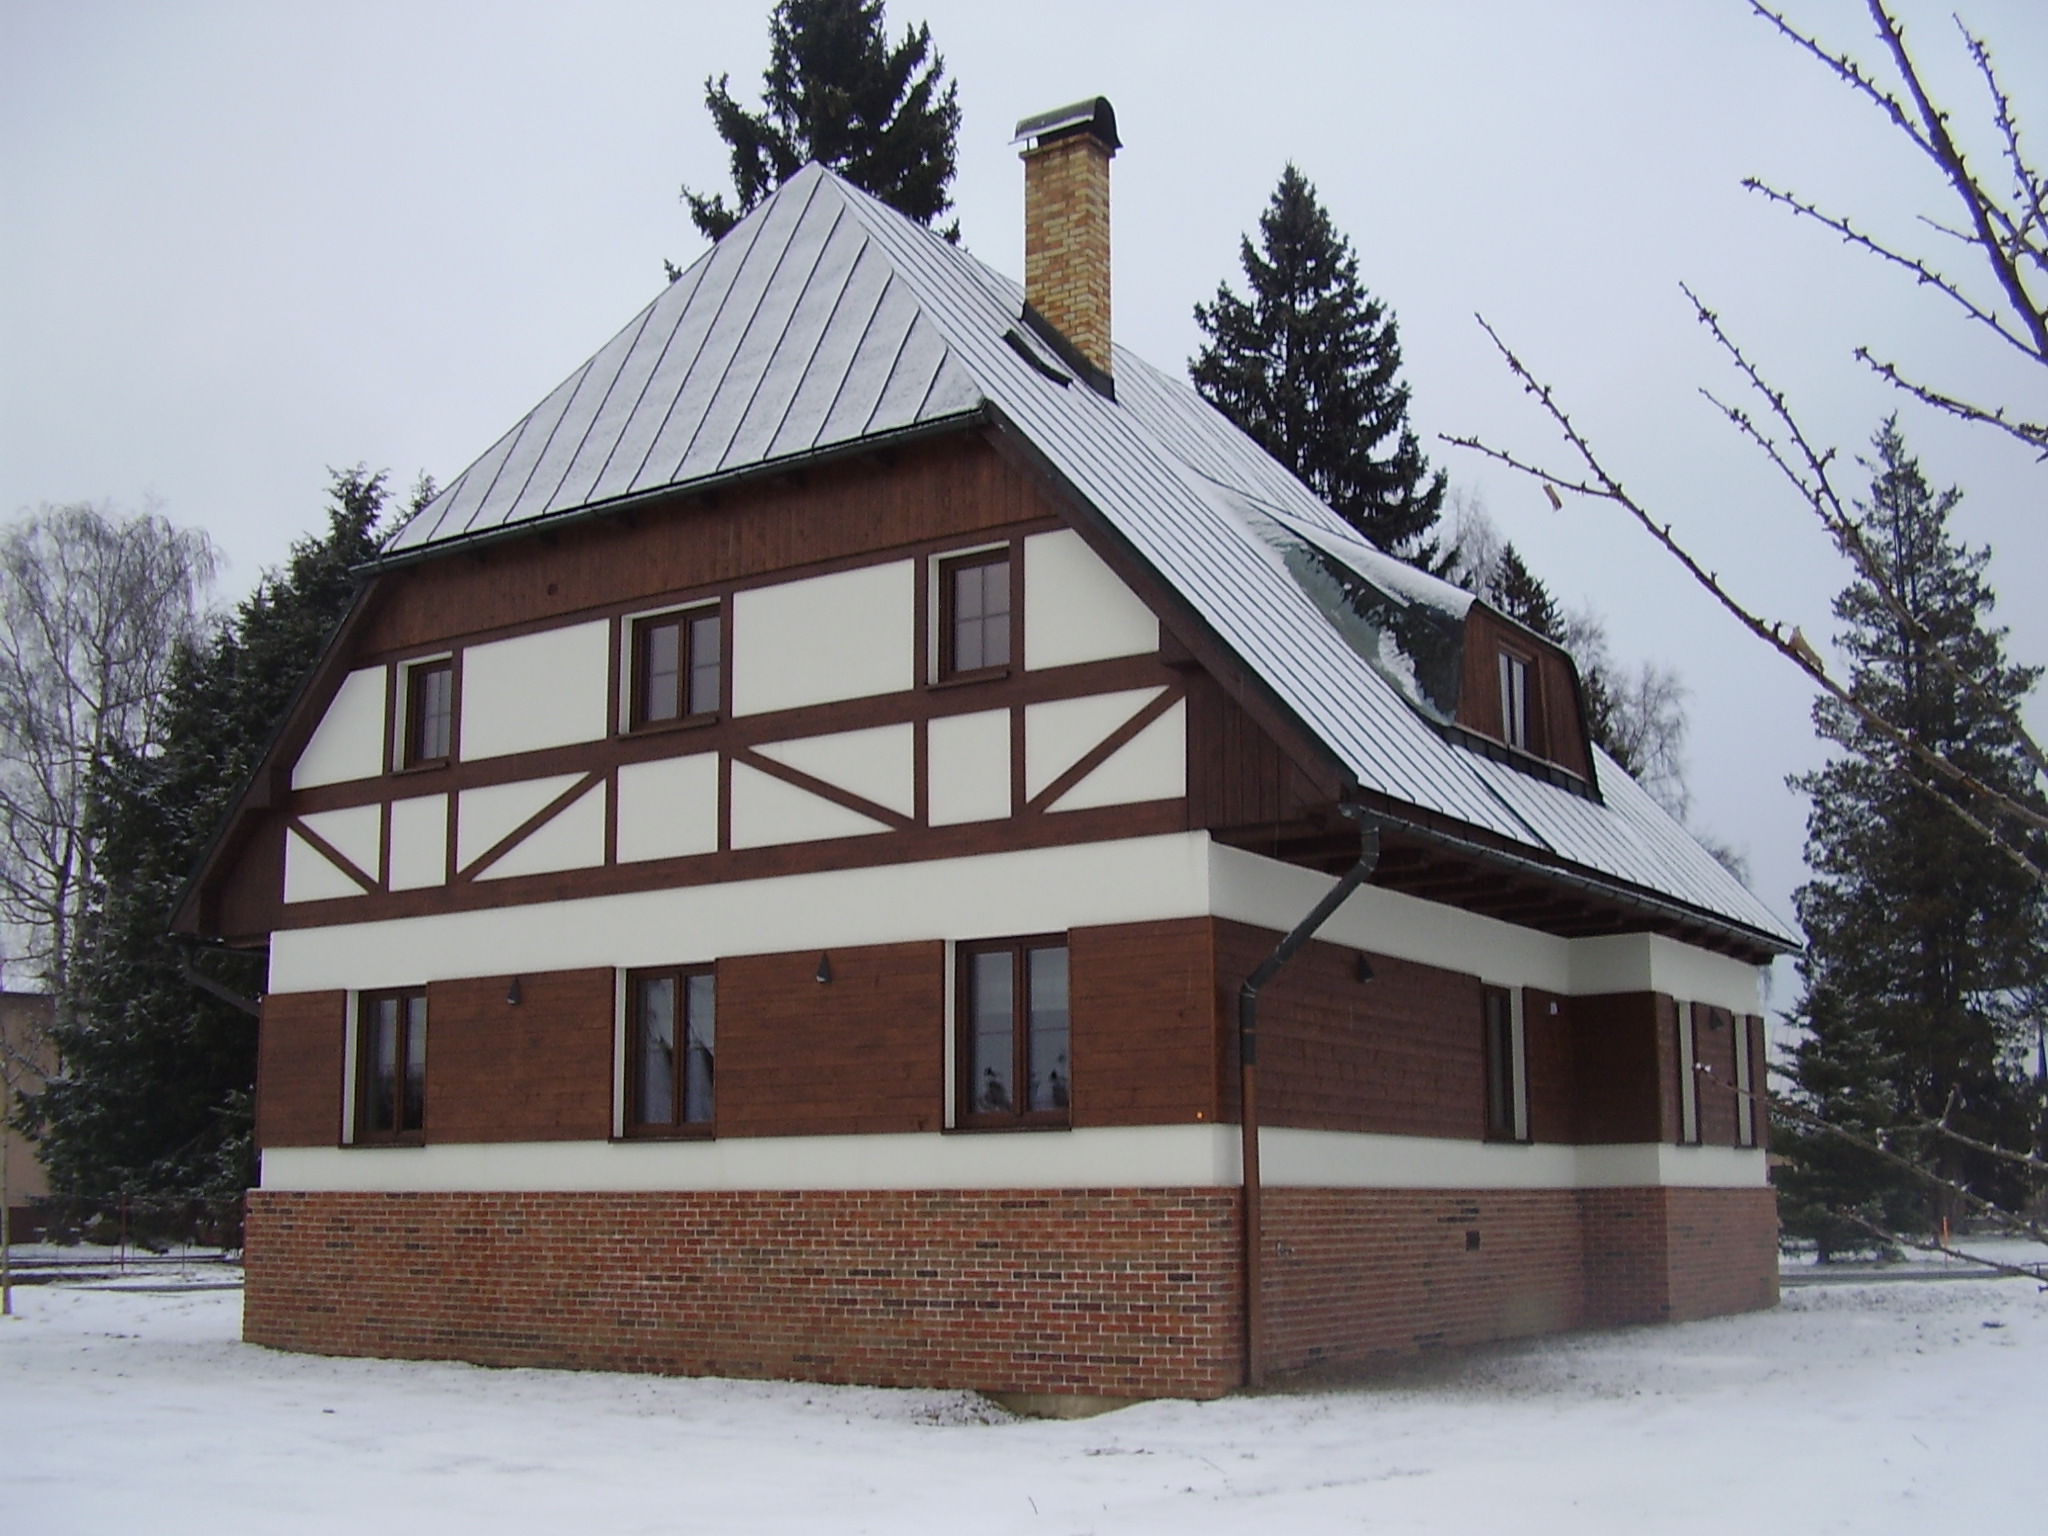 Rekonstrukce domu Vysoké nad Jizeroupřed